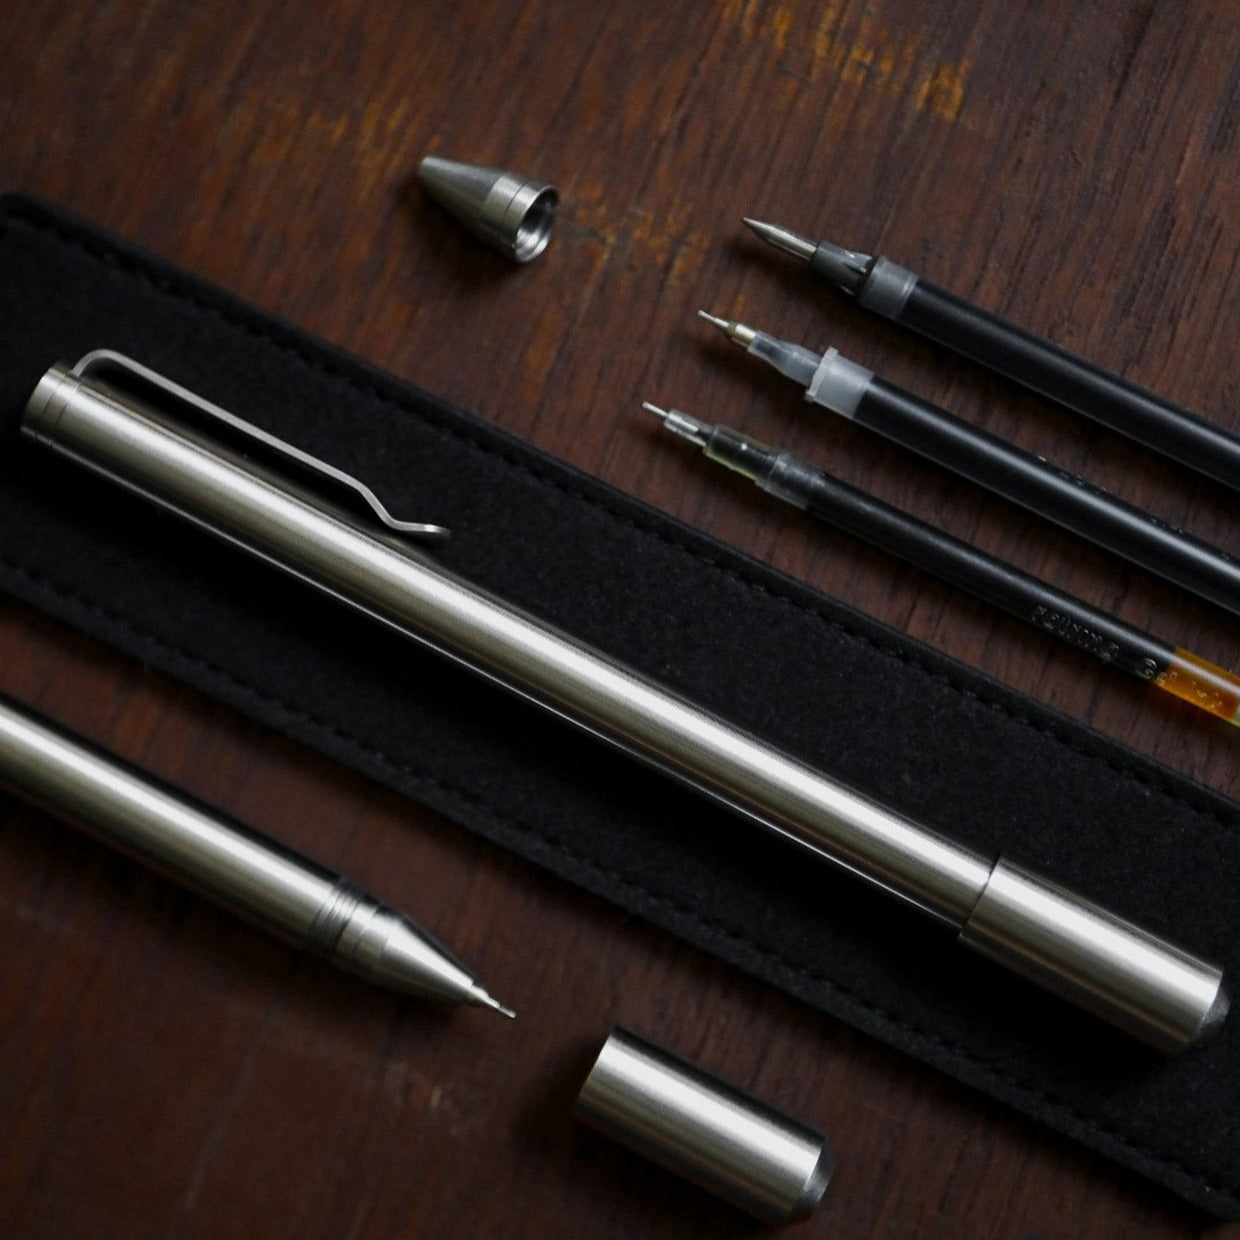 PHX-Pen : A Timeless Stainless Steel Pen - Big Idea Design LLC - INTL